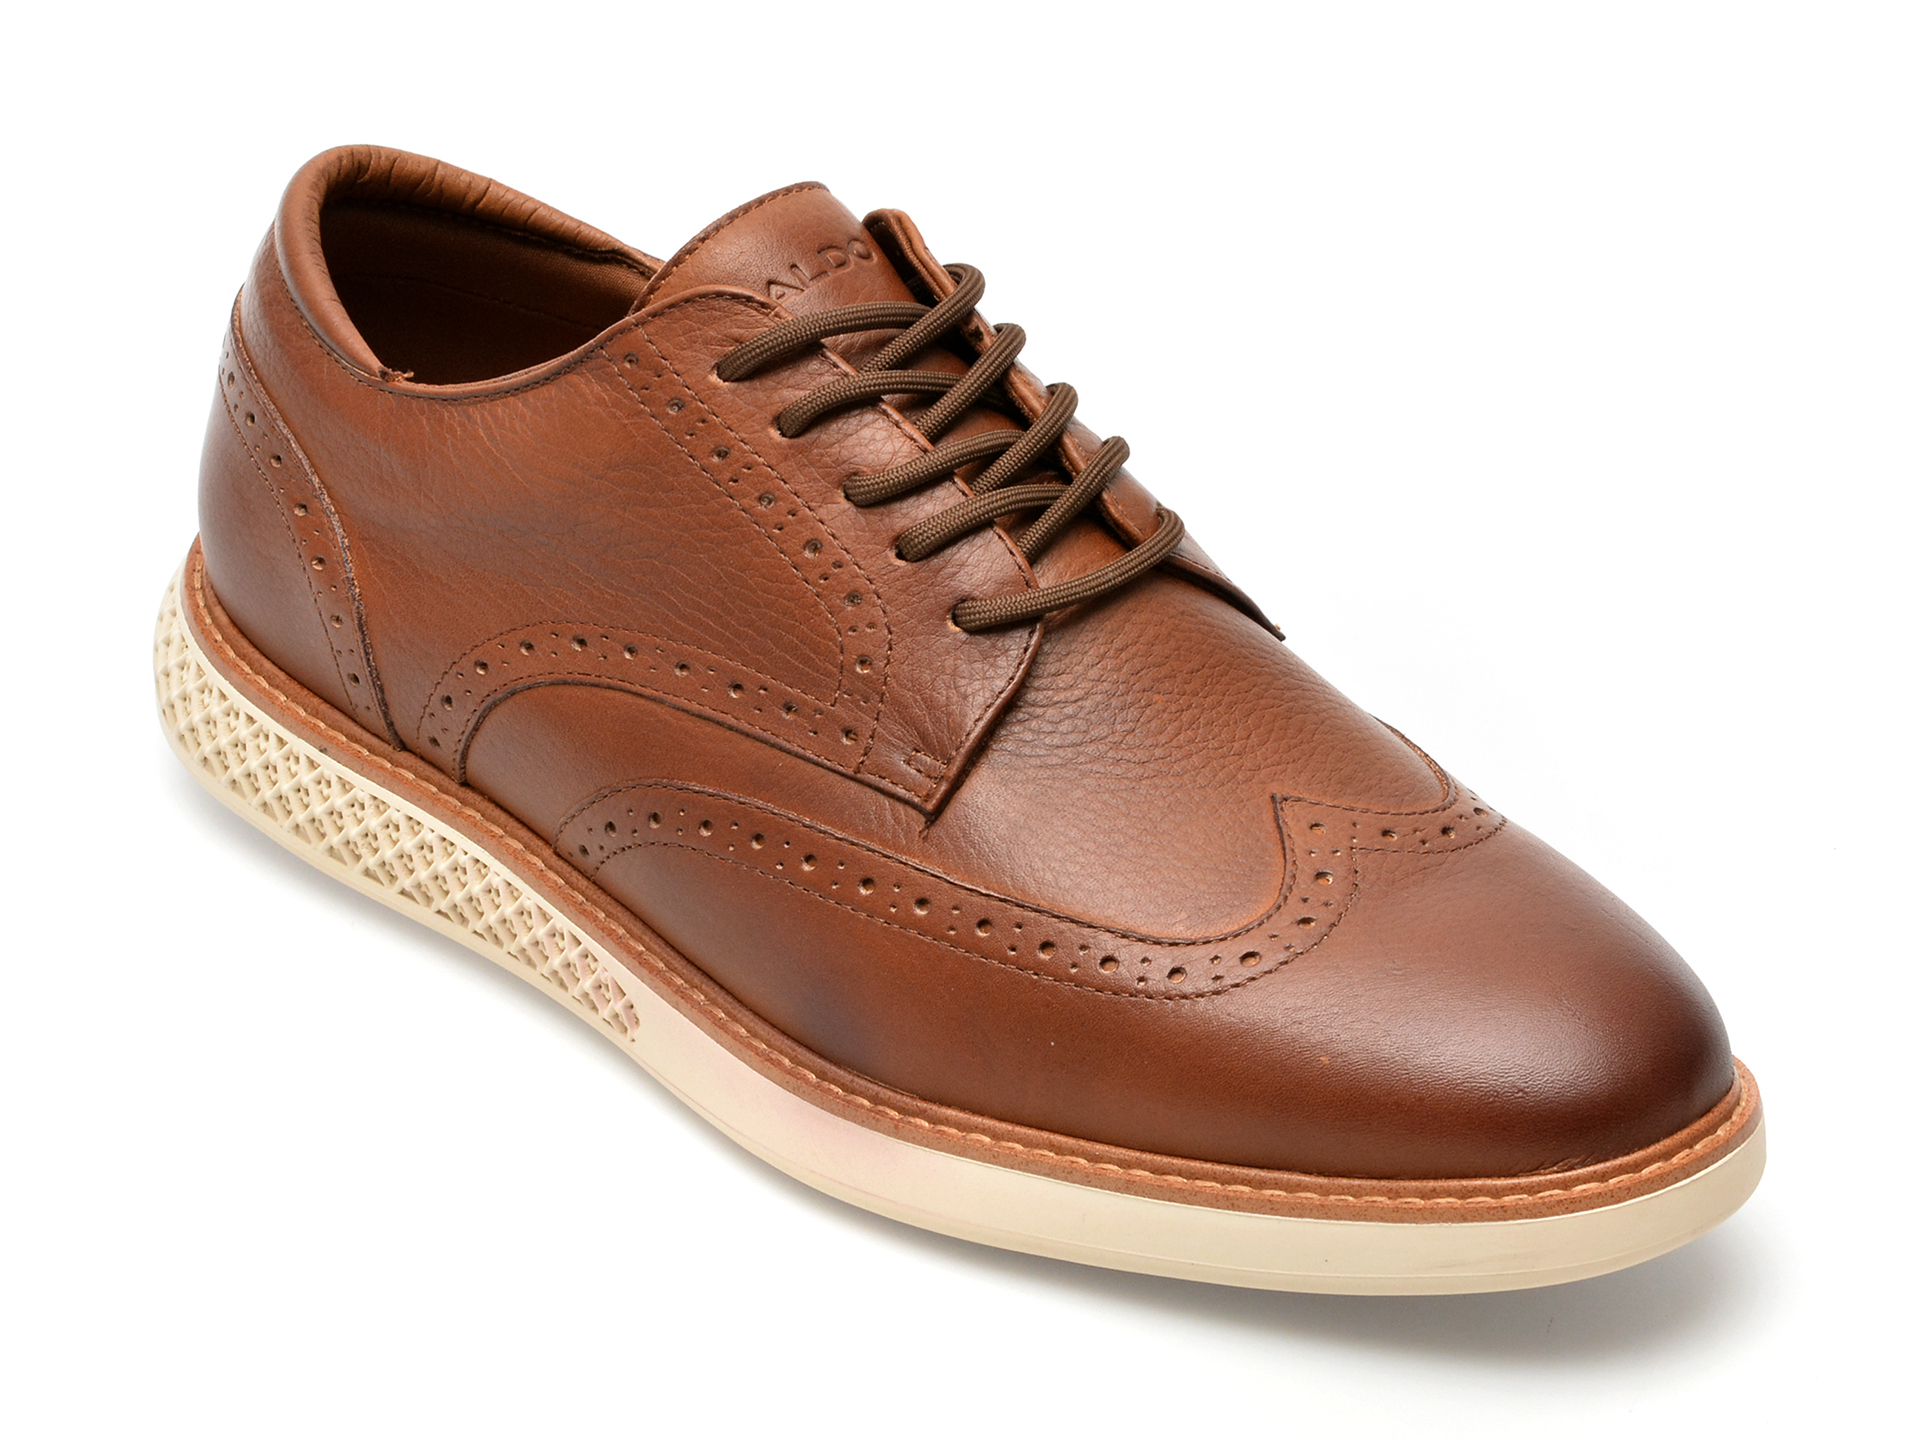 Pantofi ALDO maro, WINGSTROLL220, din piele naturala /barbati/pantofi